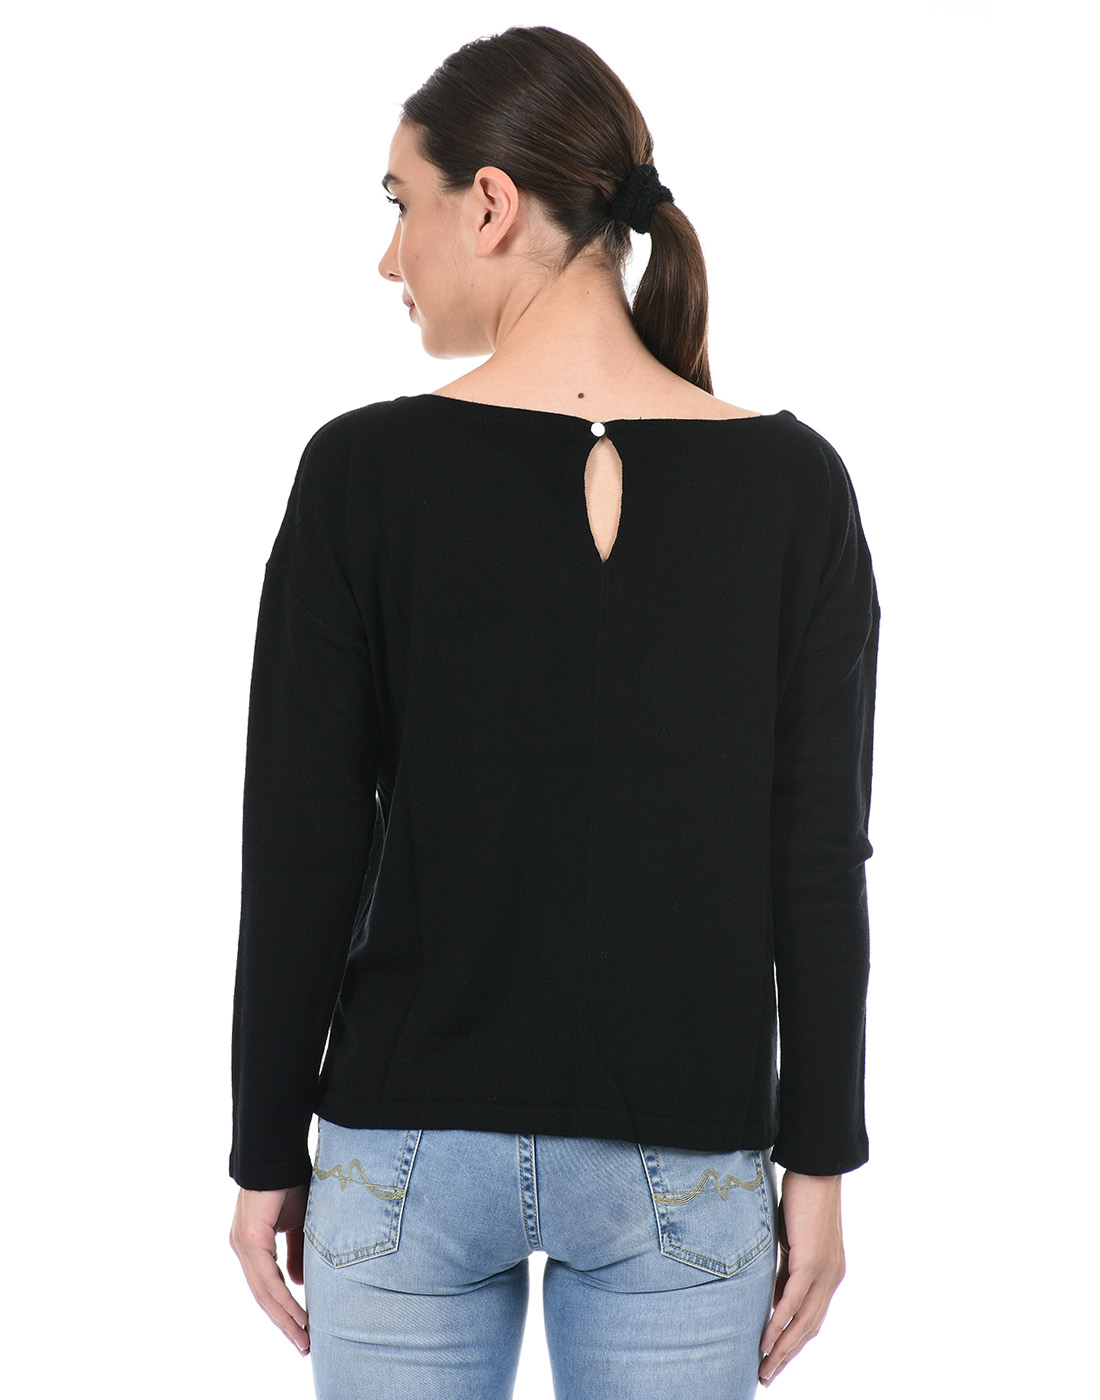 Species Women Black Applique Sweater